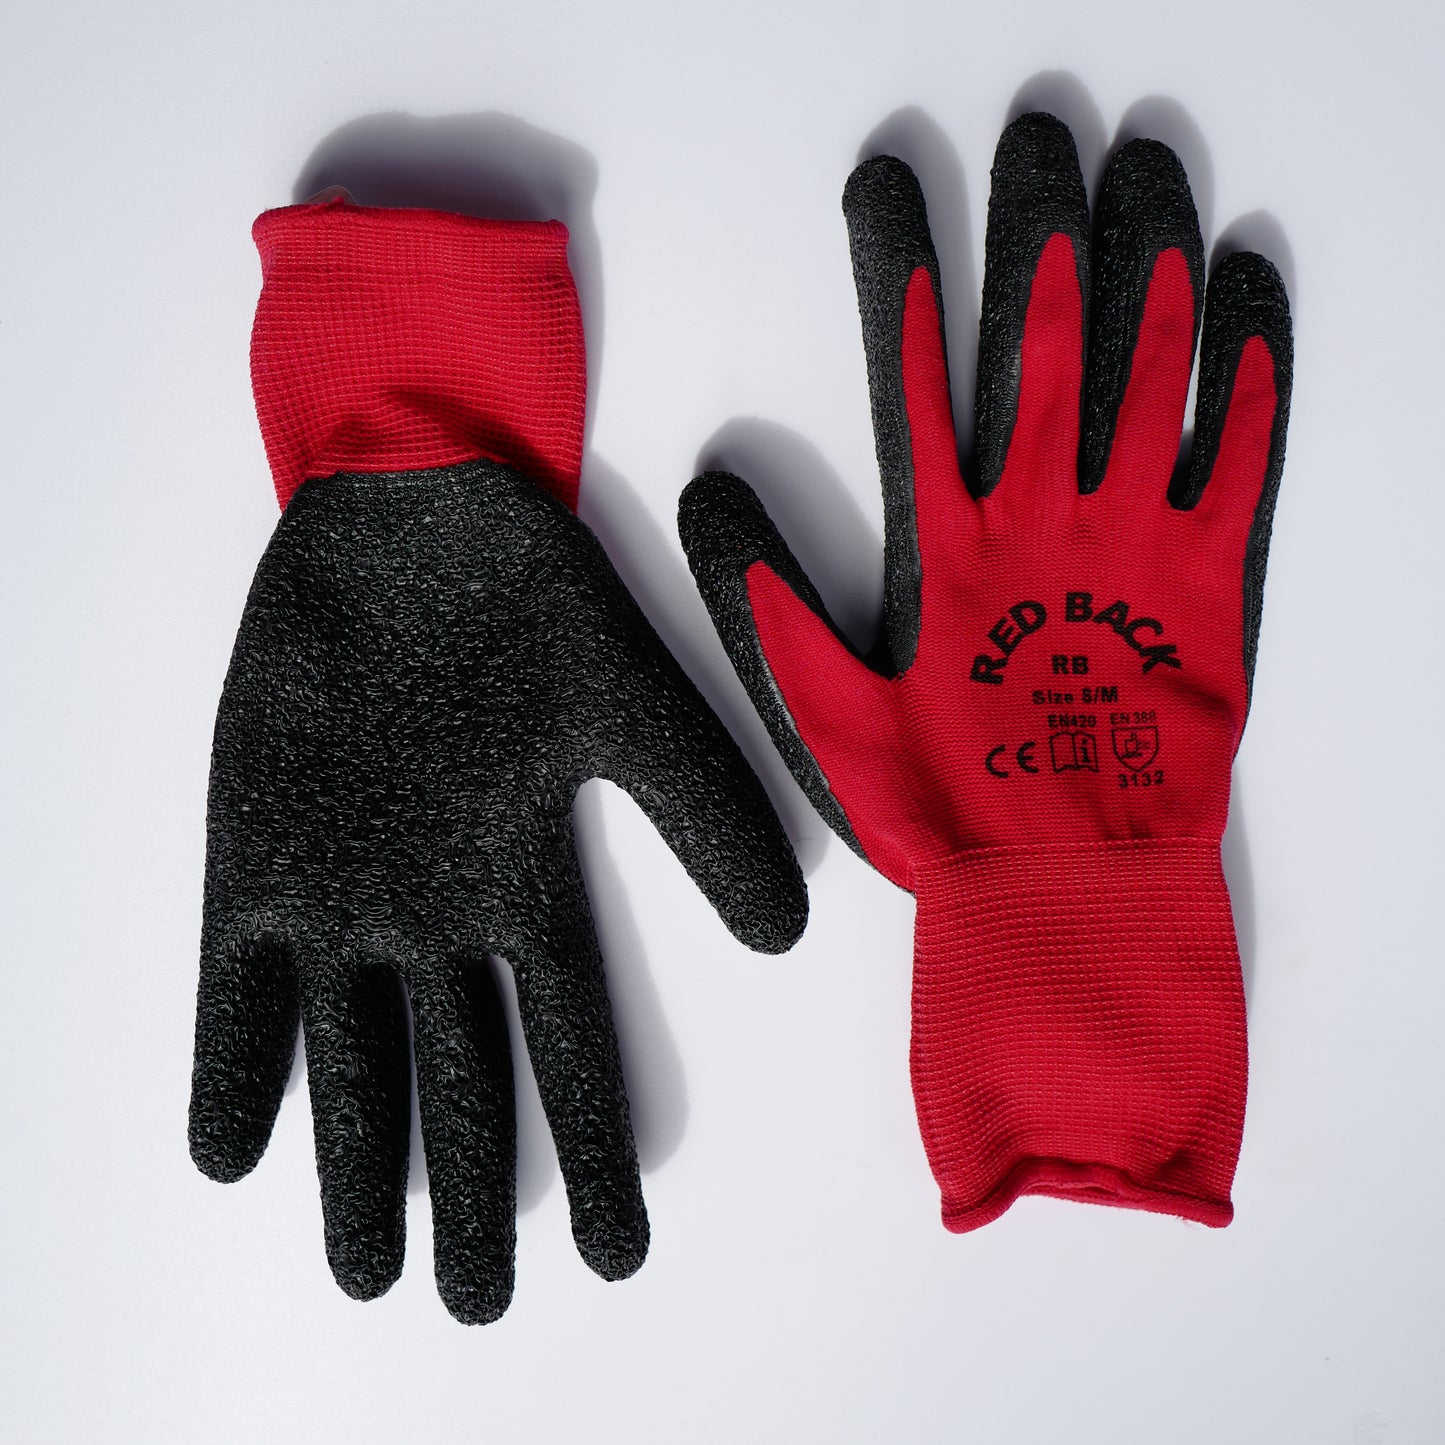 Red Backs Gardening Gloves